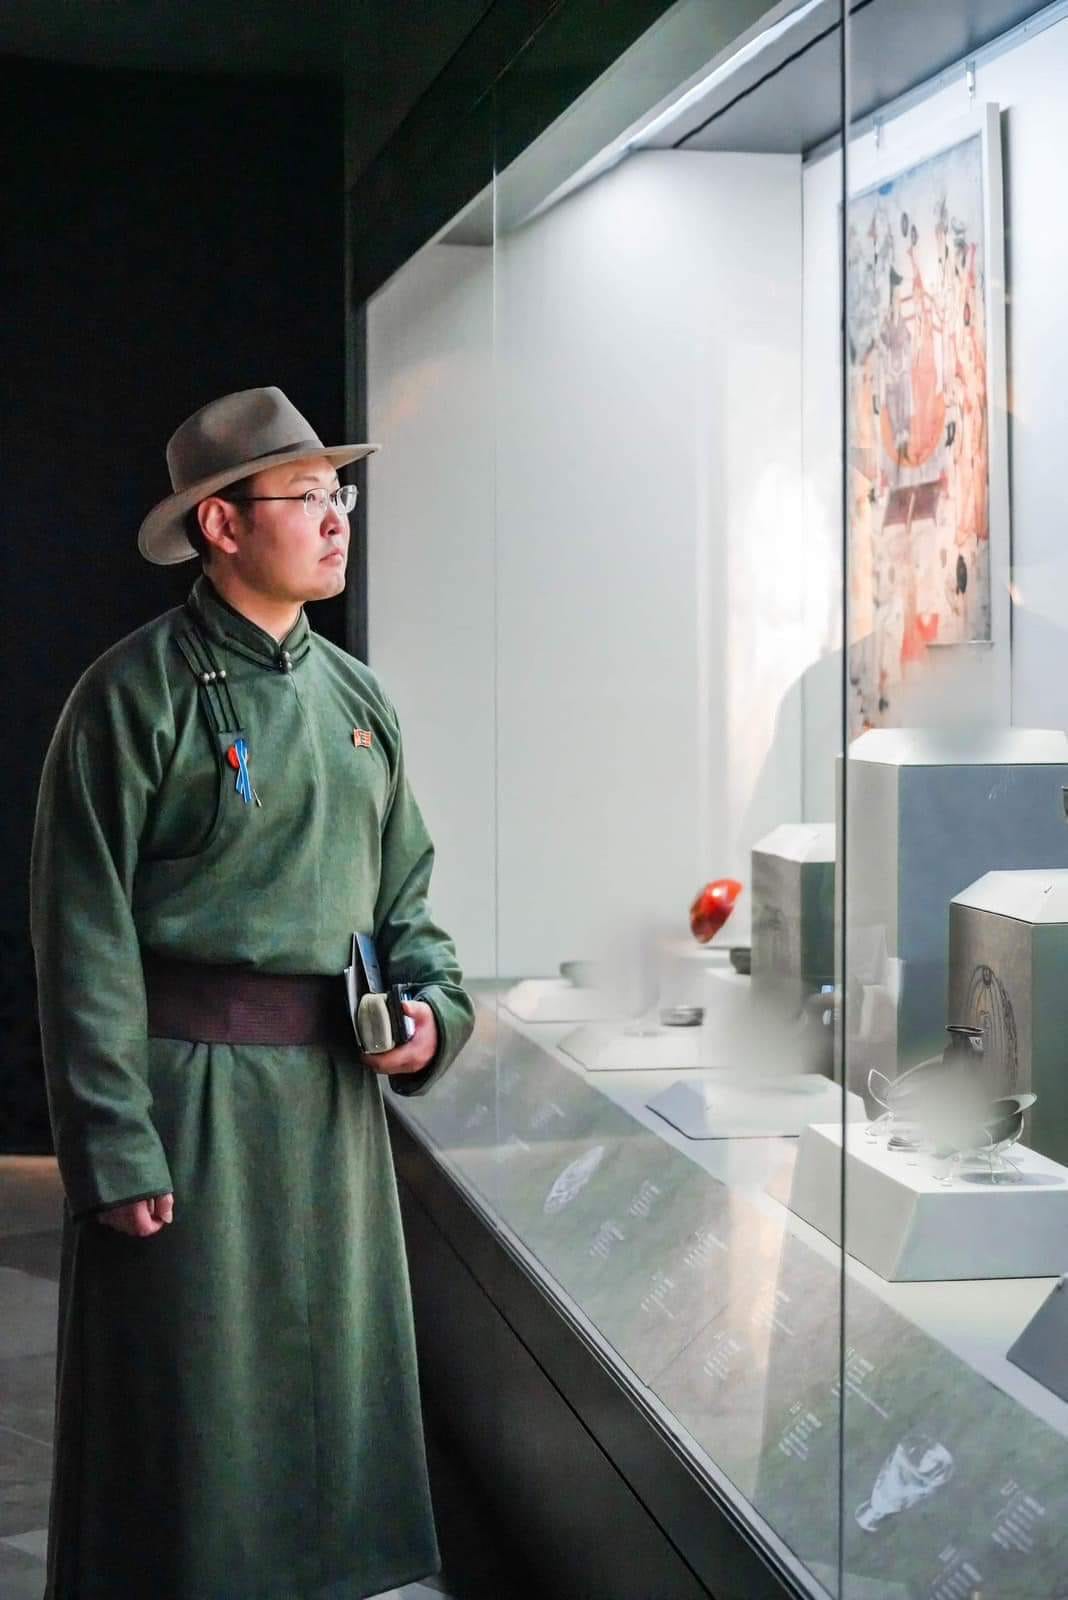 "Чингис хаан" хаад, язгууртны музейн нээлтийн ёслолд оролцлоо